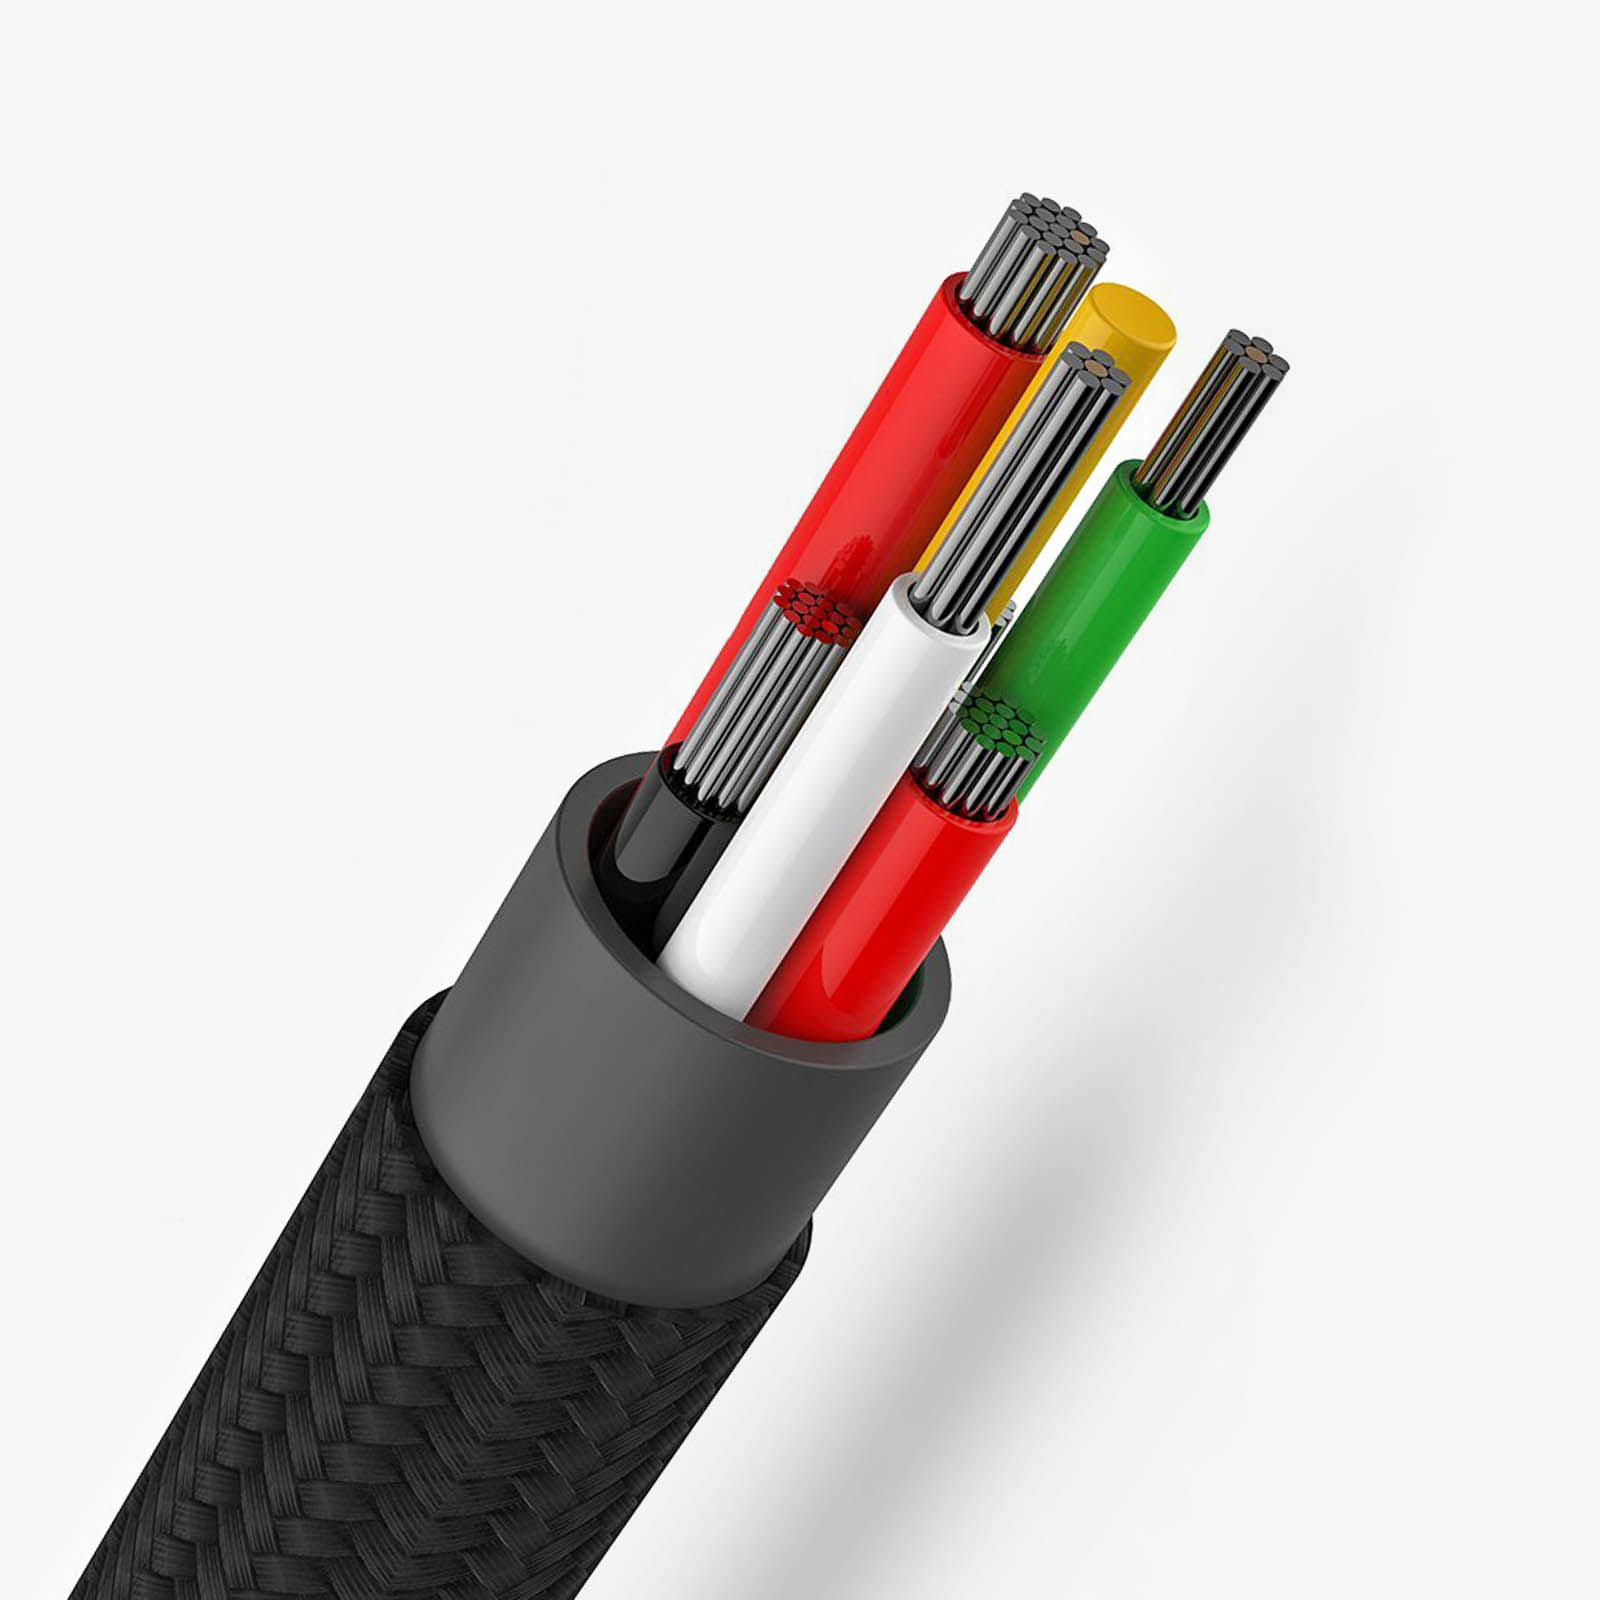 Cable Chargeur 3 en 1 Couleur Noire LG0017 - Sodishop